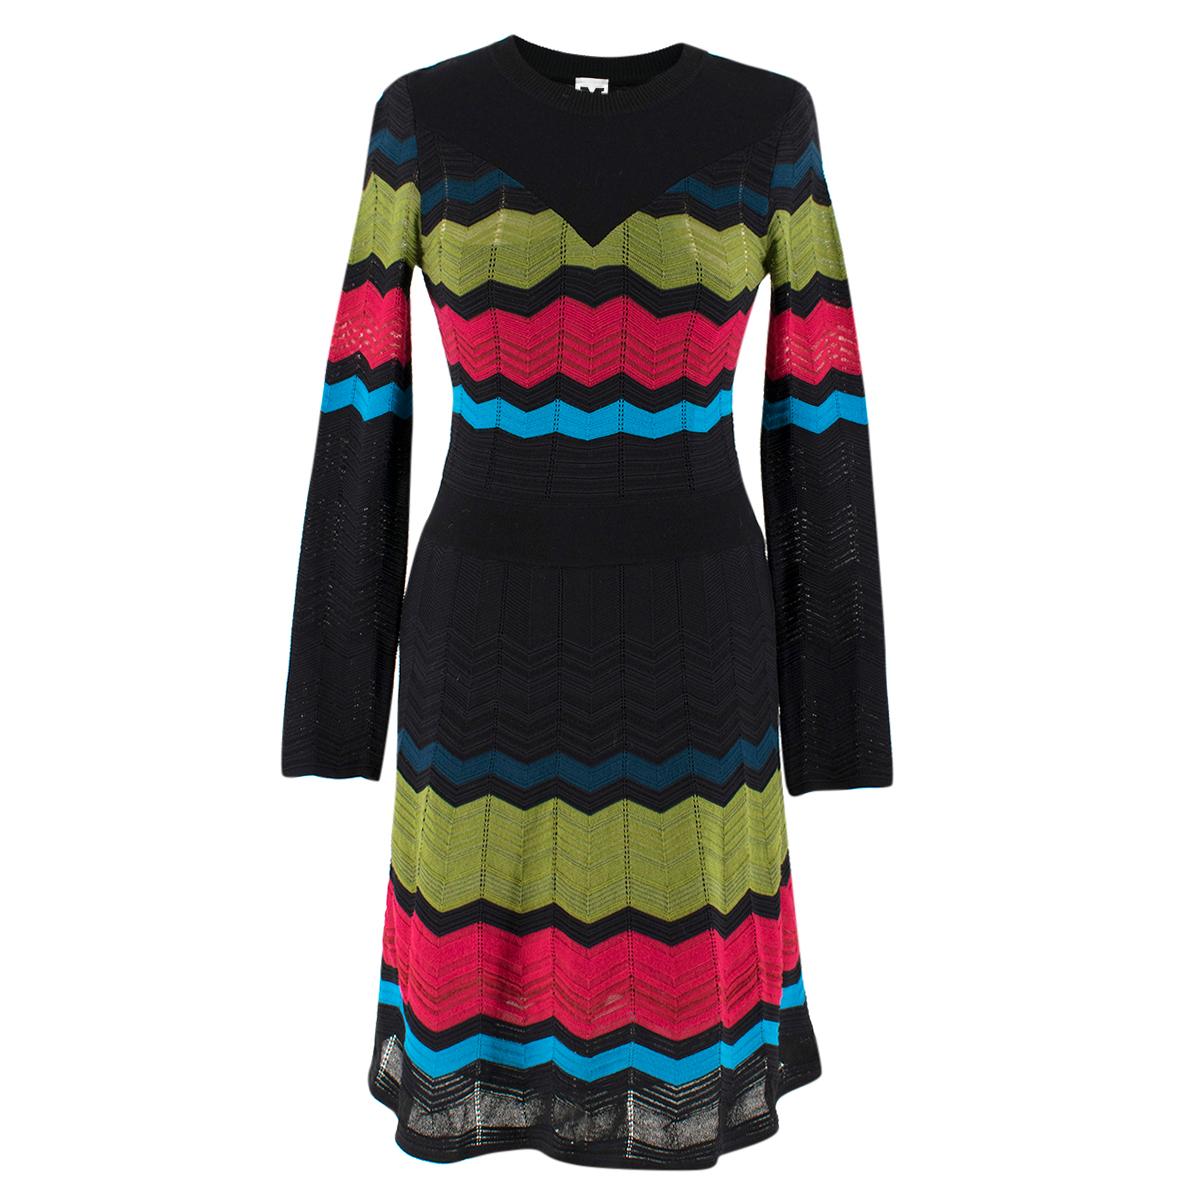 M Missoni Multicolor Knit A-line Dress Size IT 38 / US 0-2